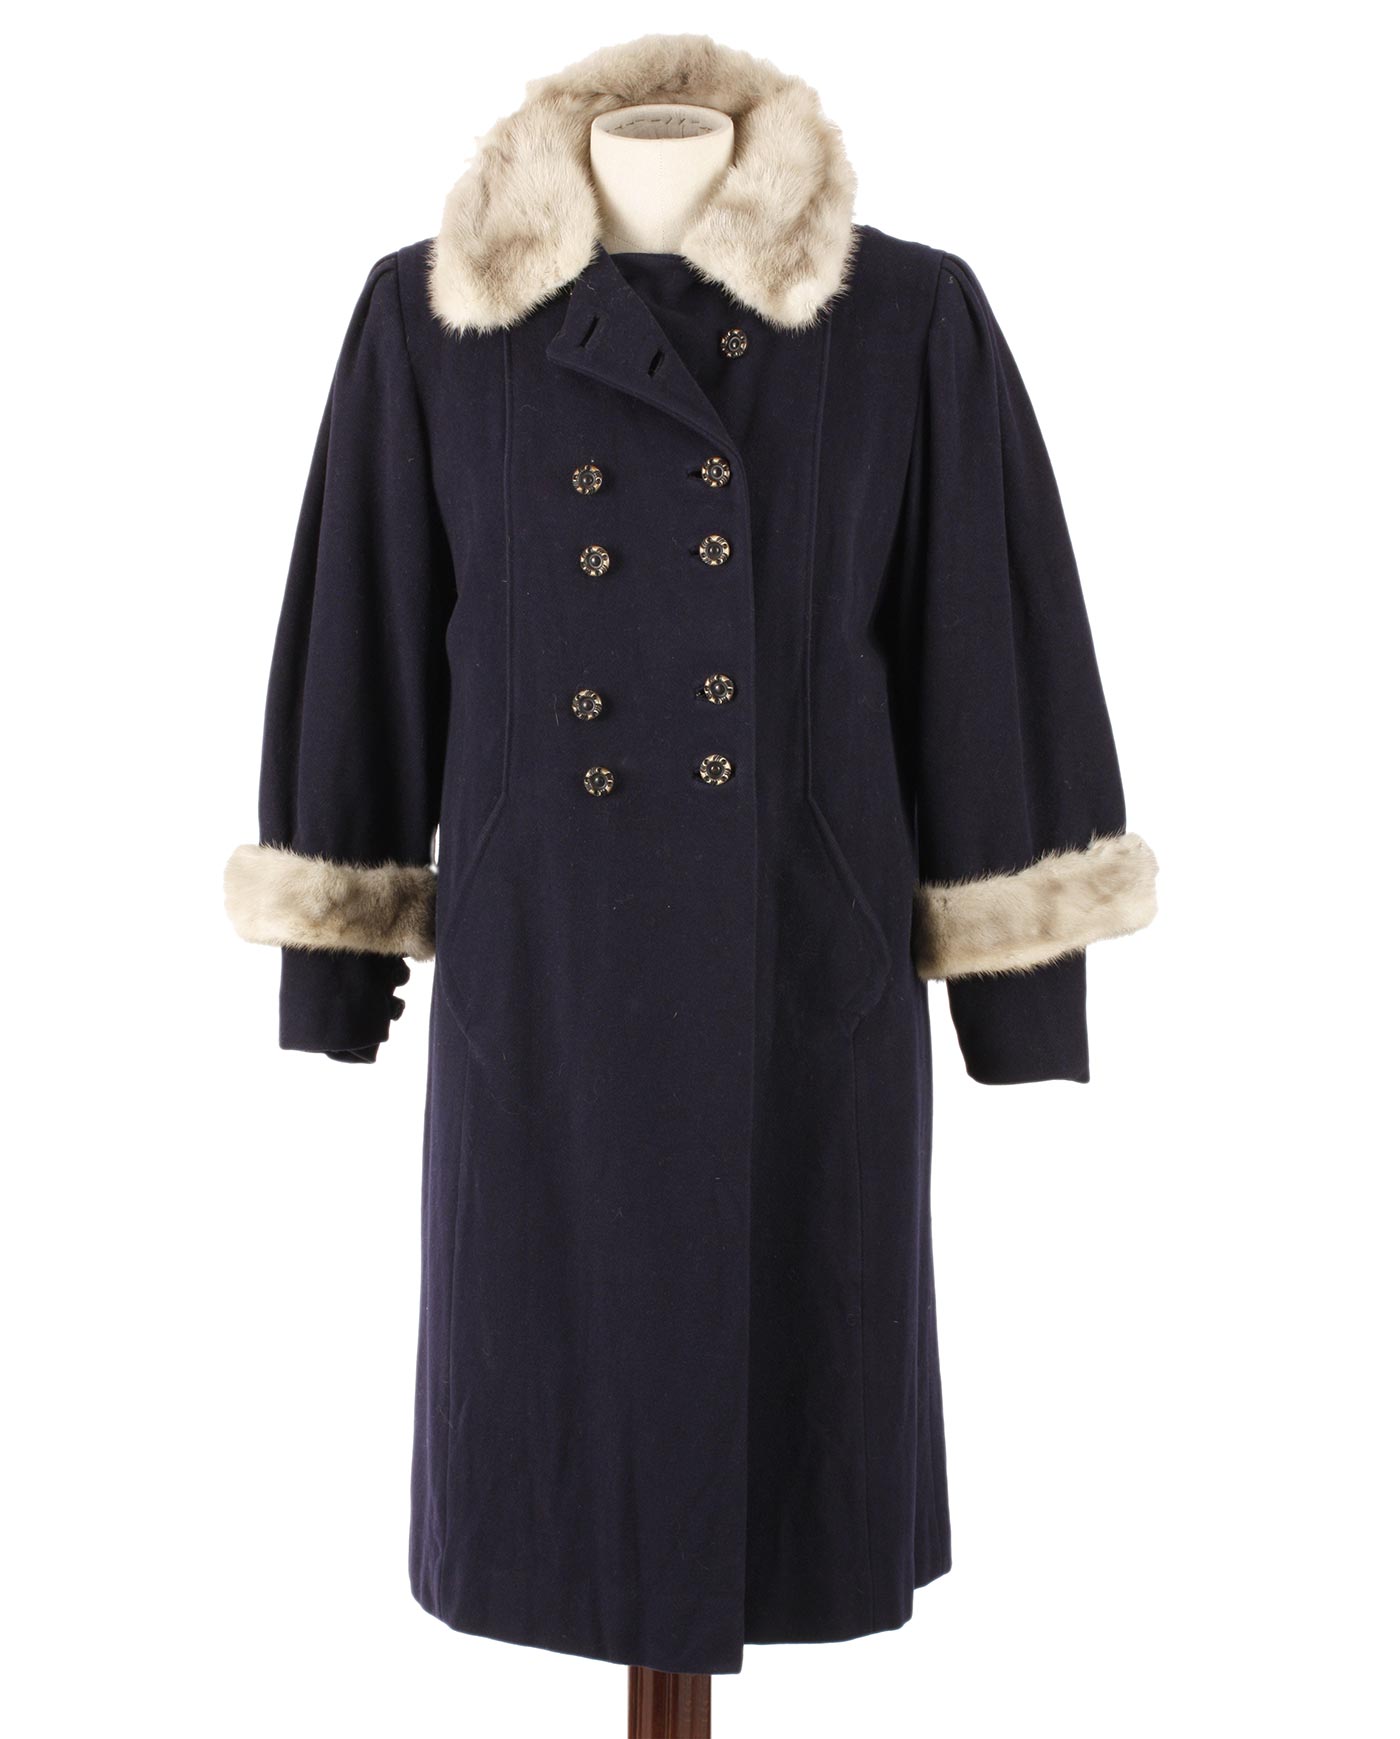 MORRIS B.SACHS Inc. wool coat 40s